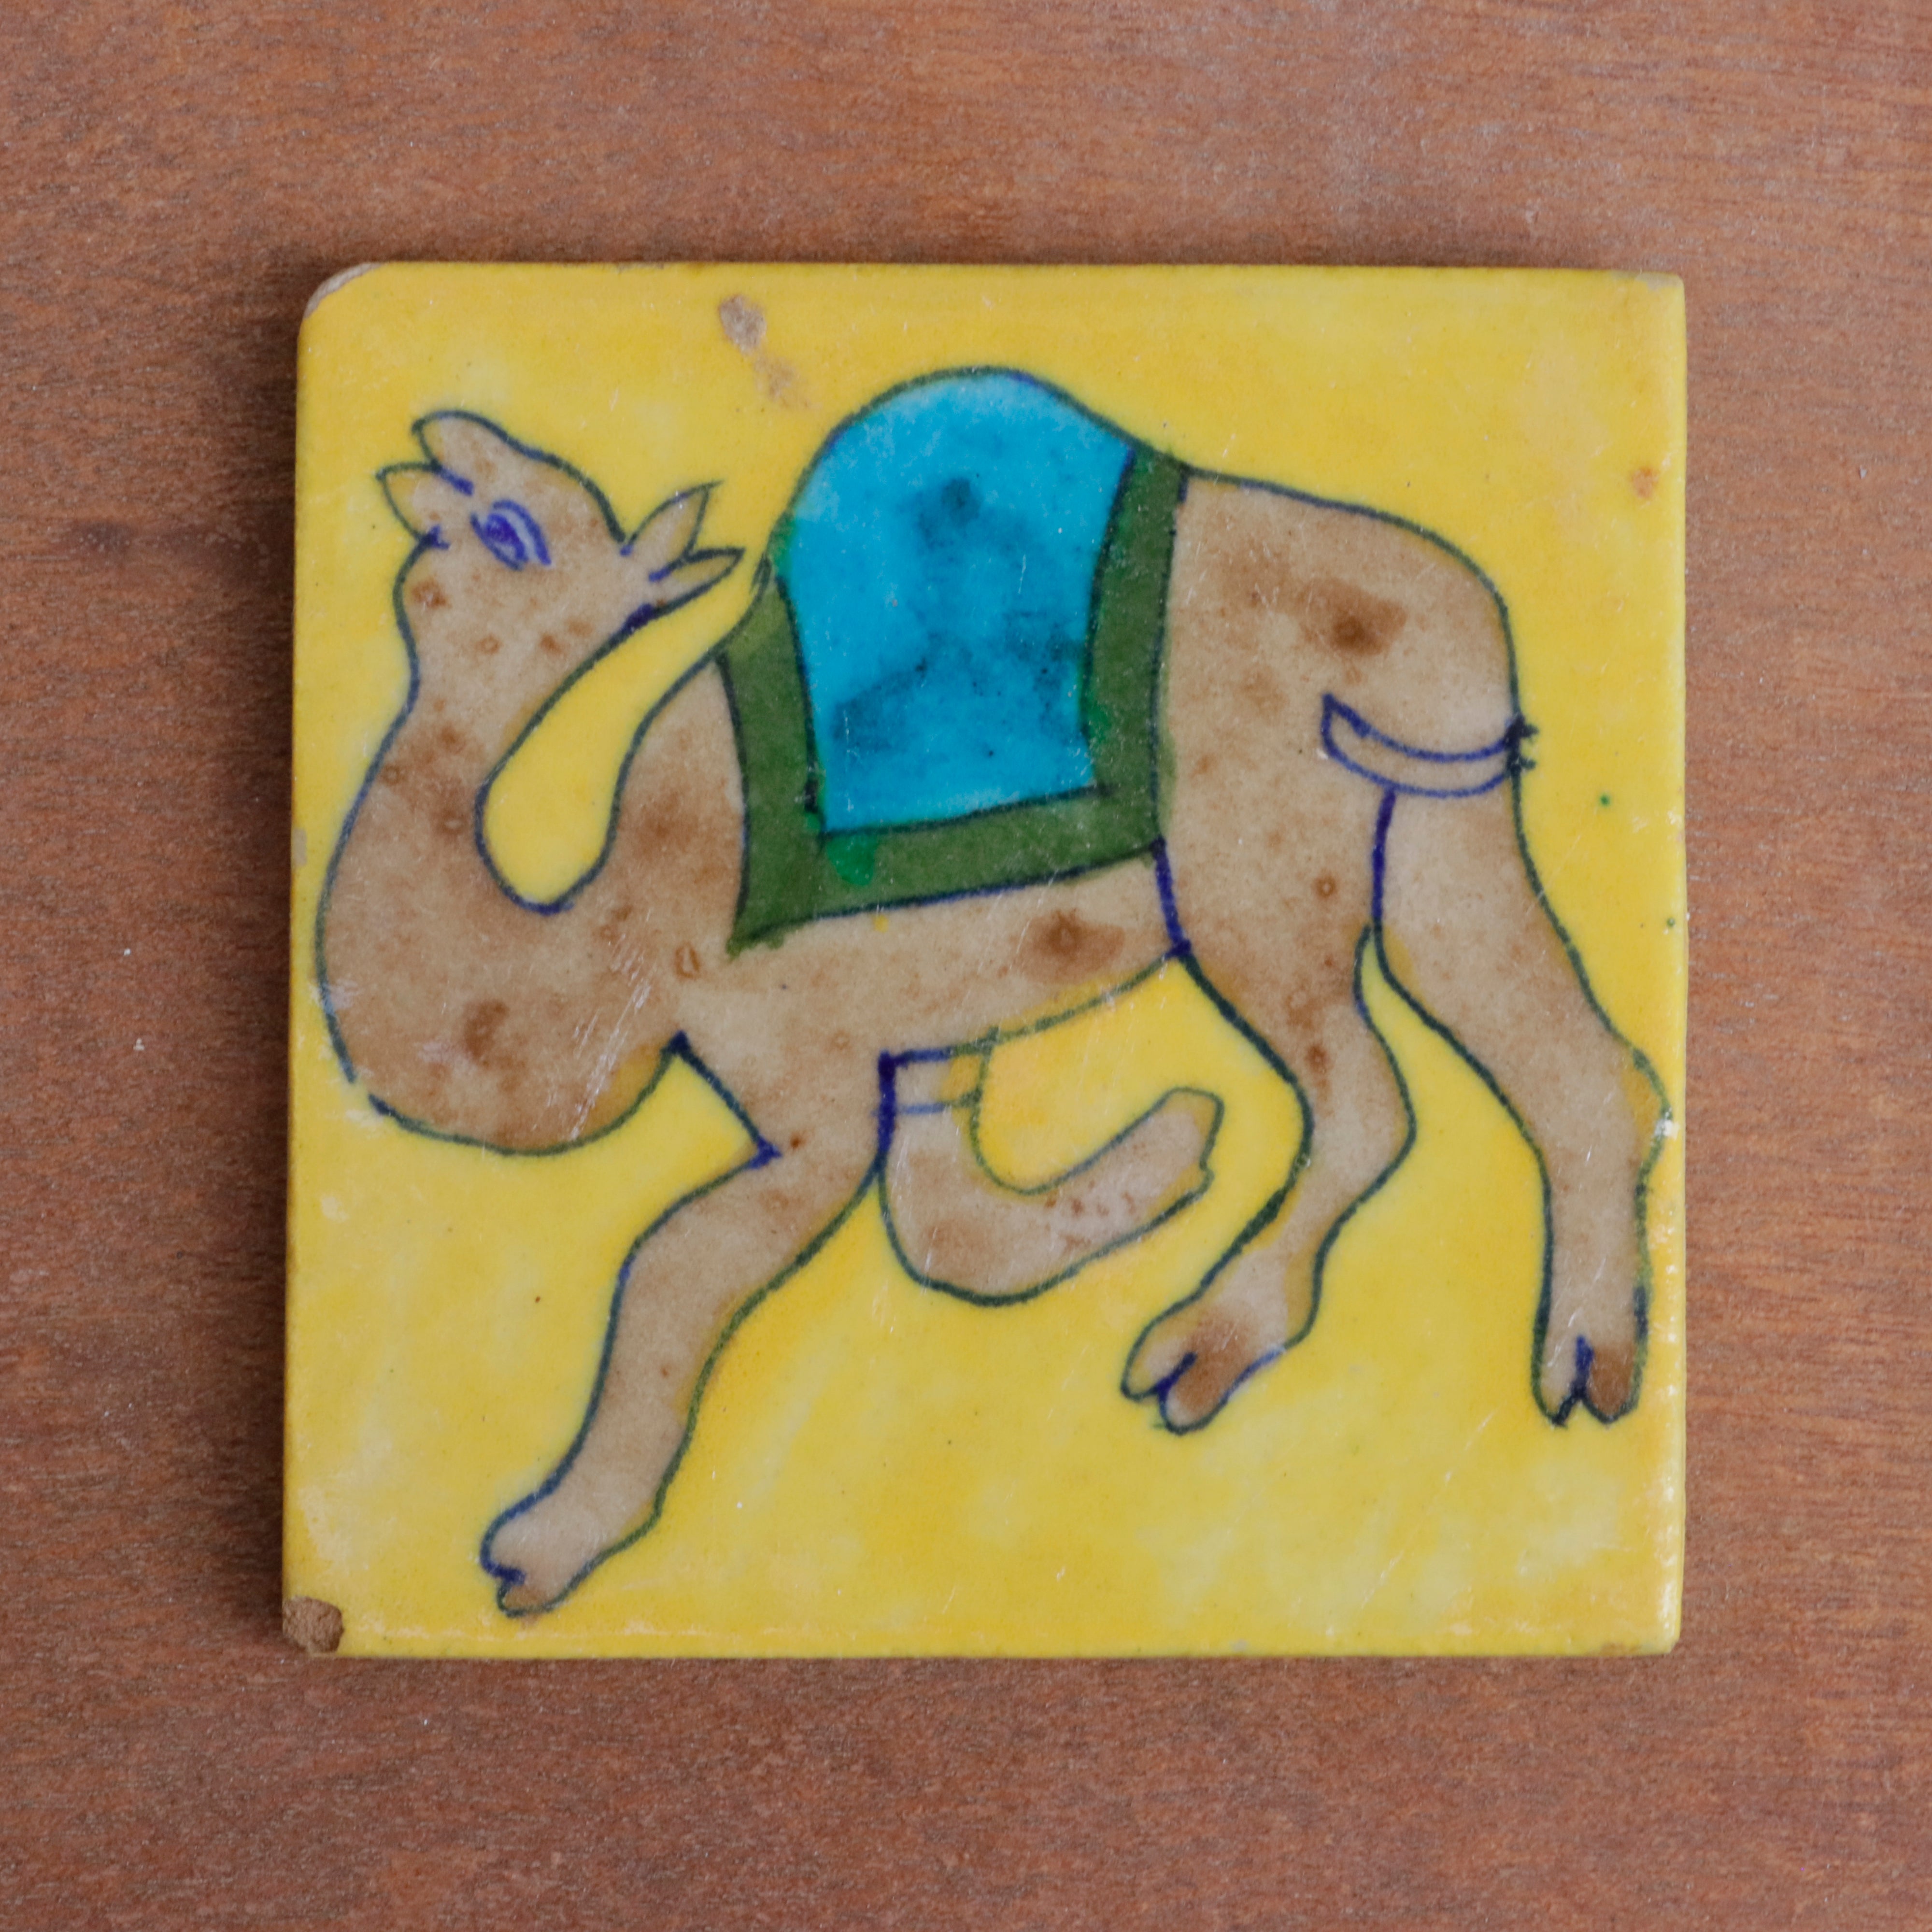 Classic Rich Dancing Camel Designed Square Ceramic Tile Ceramic Tile